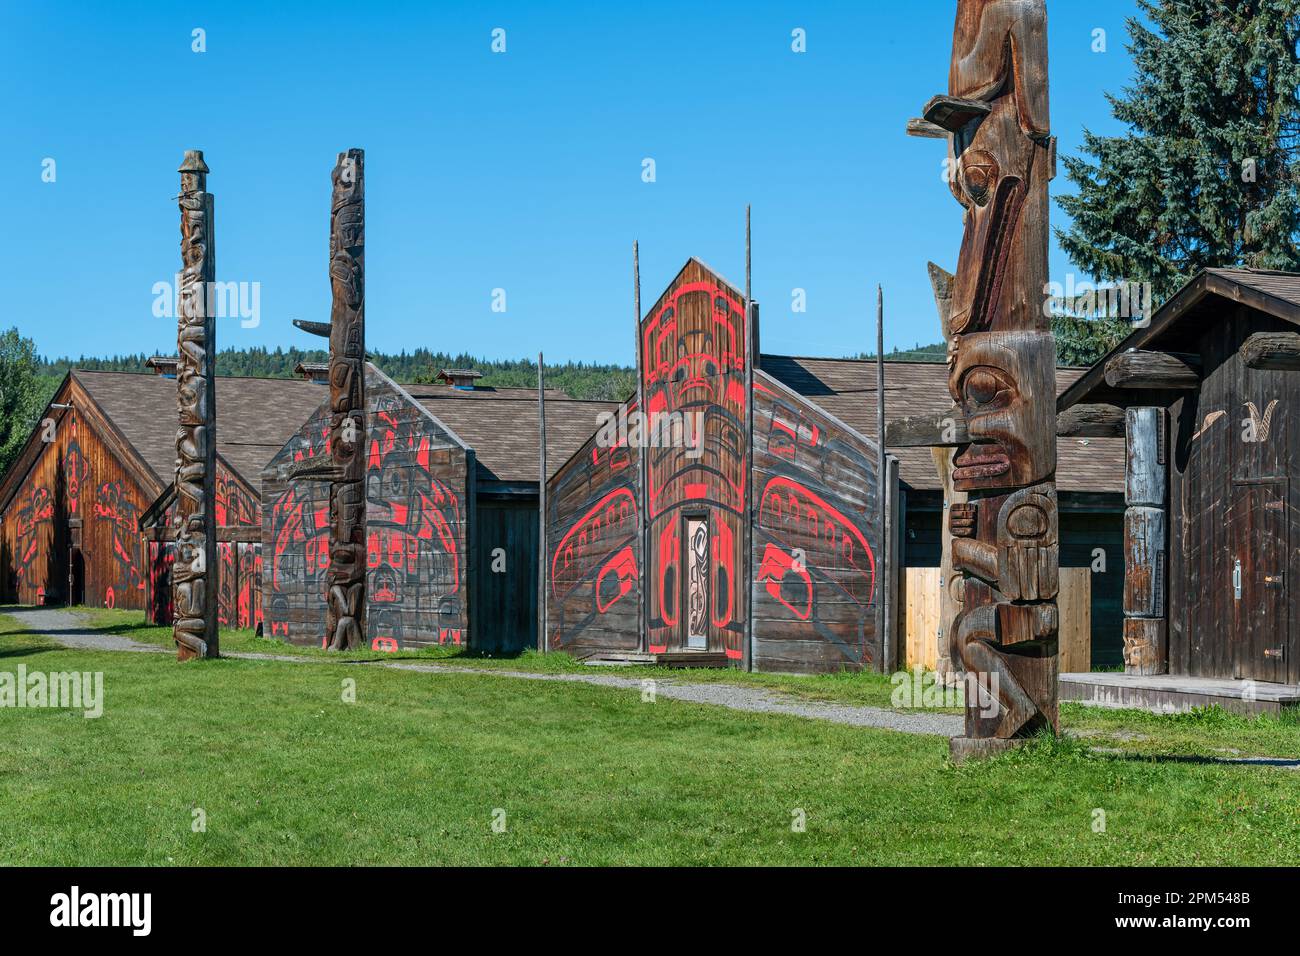 Traditionelle lange Häuser und Totempfähle der Ureinwohner der Gitxsan First Nations, Ksan historisches Dorf, Old Hazelton, Kanada. Stockfoto